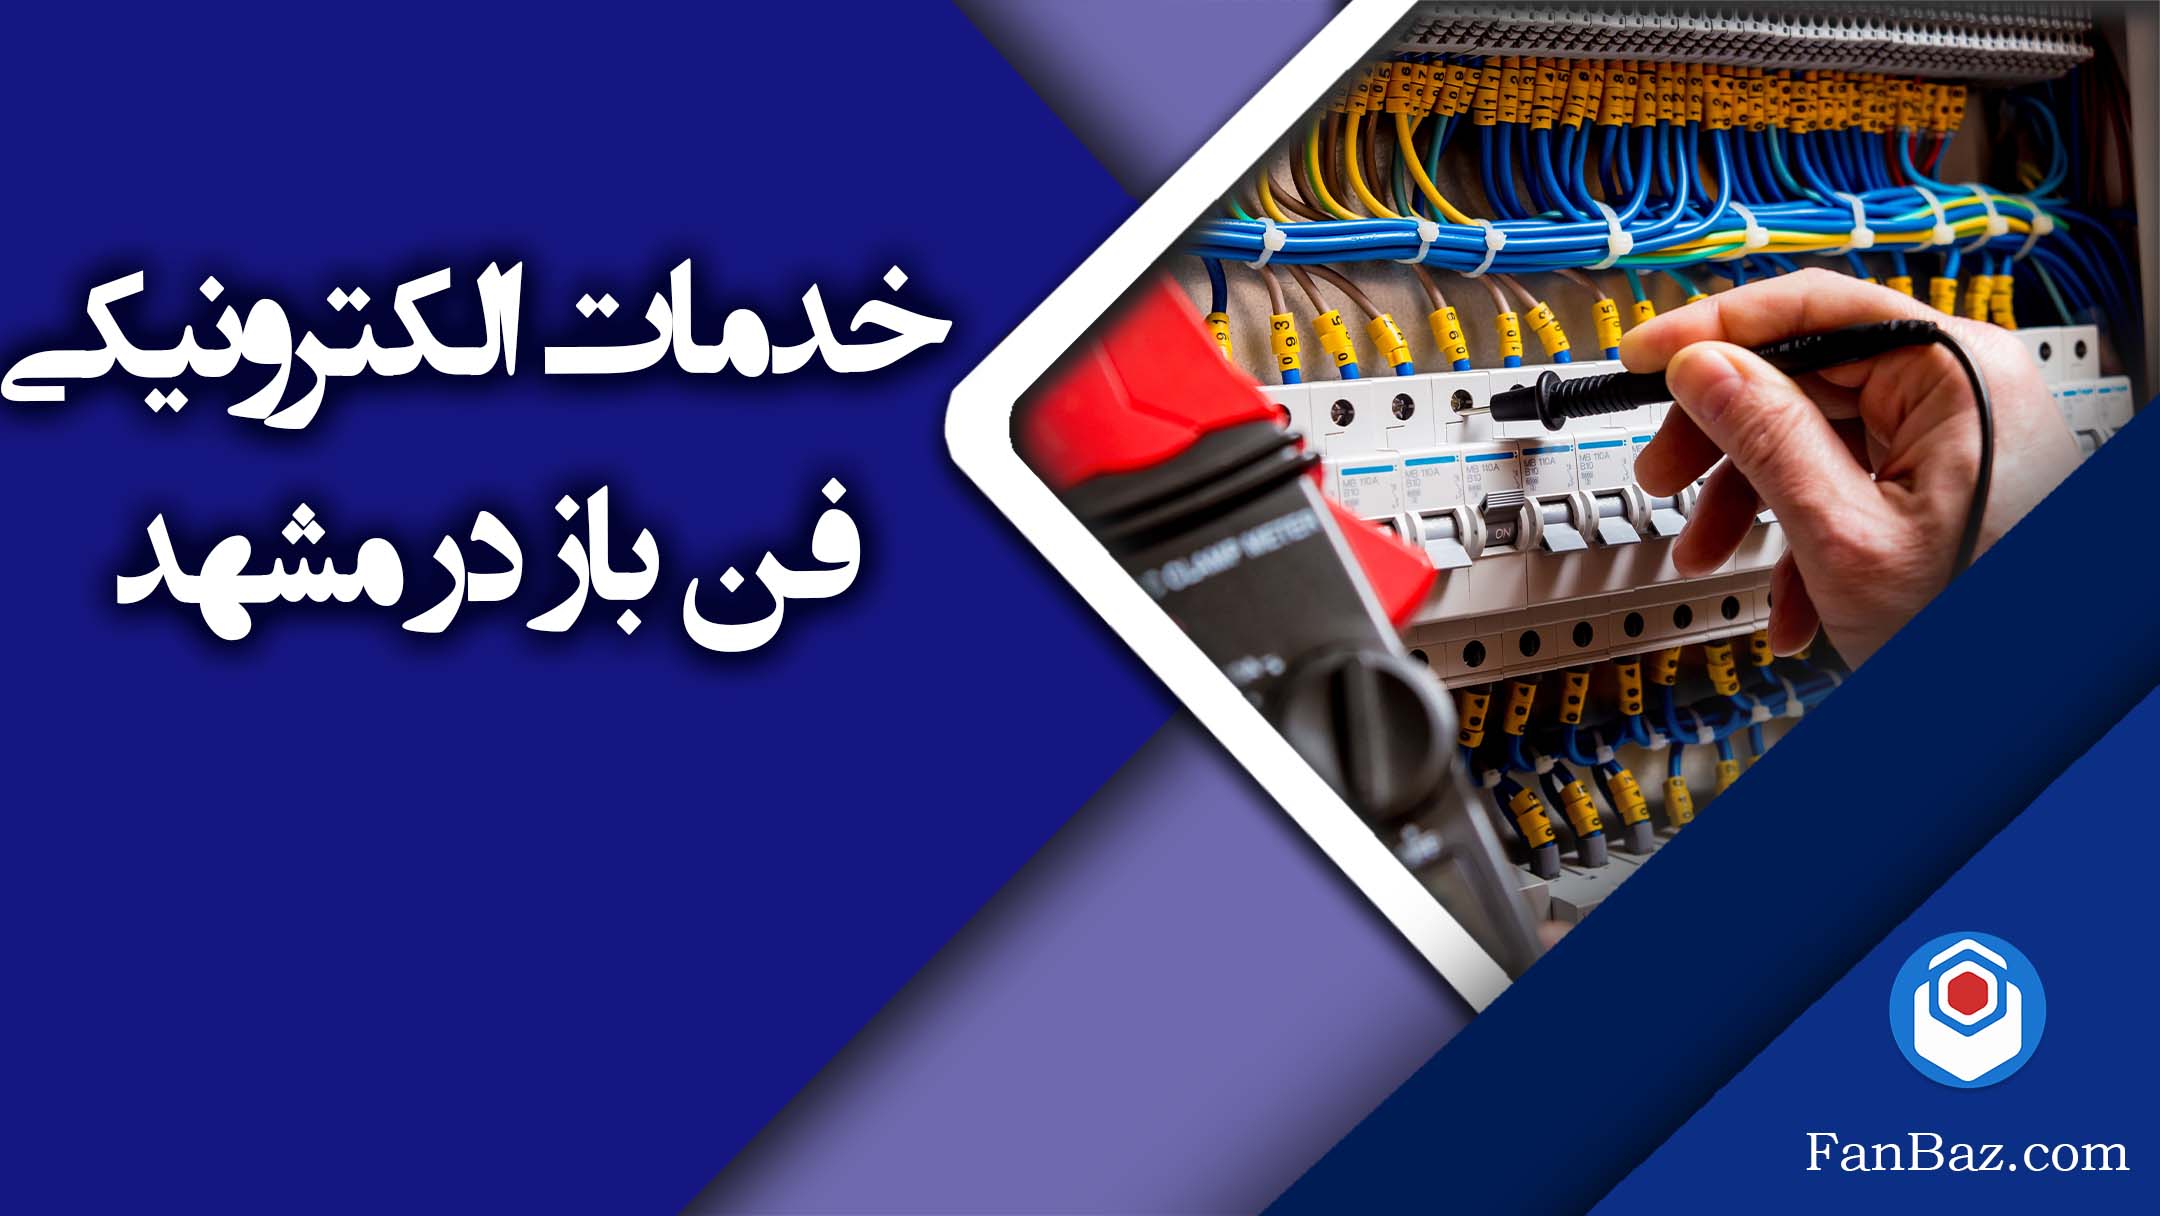 خدمات الکترونیکی فن باز در مشهد